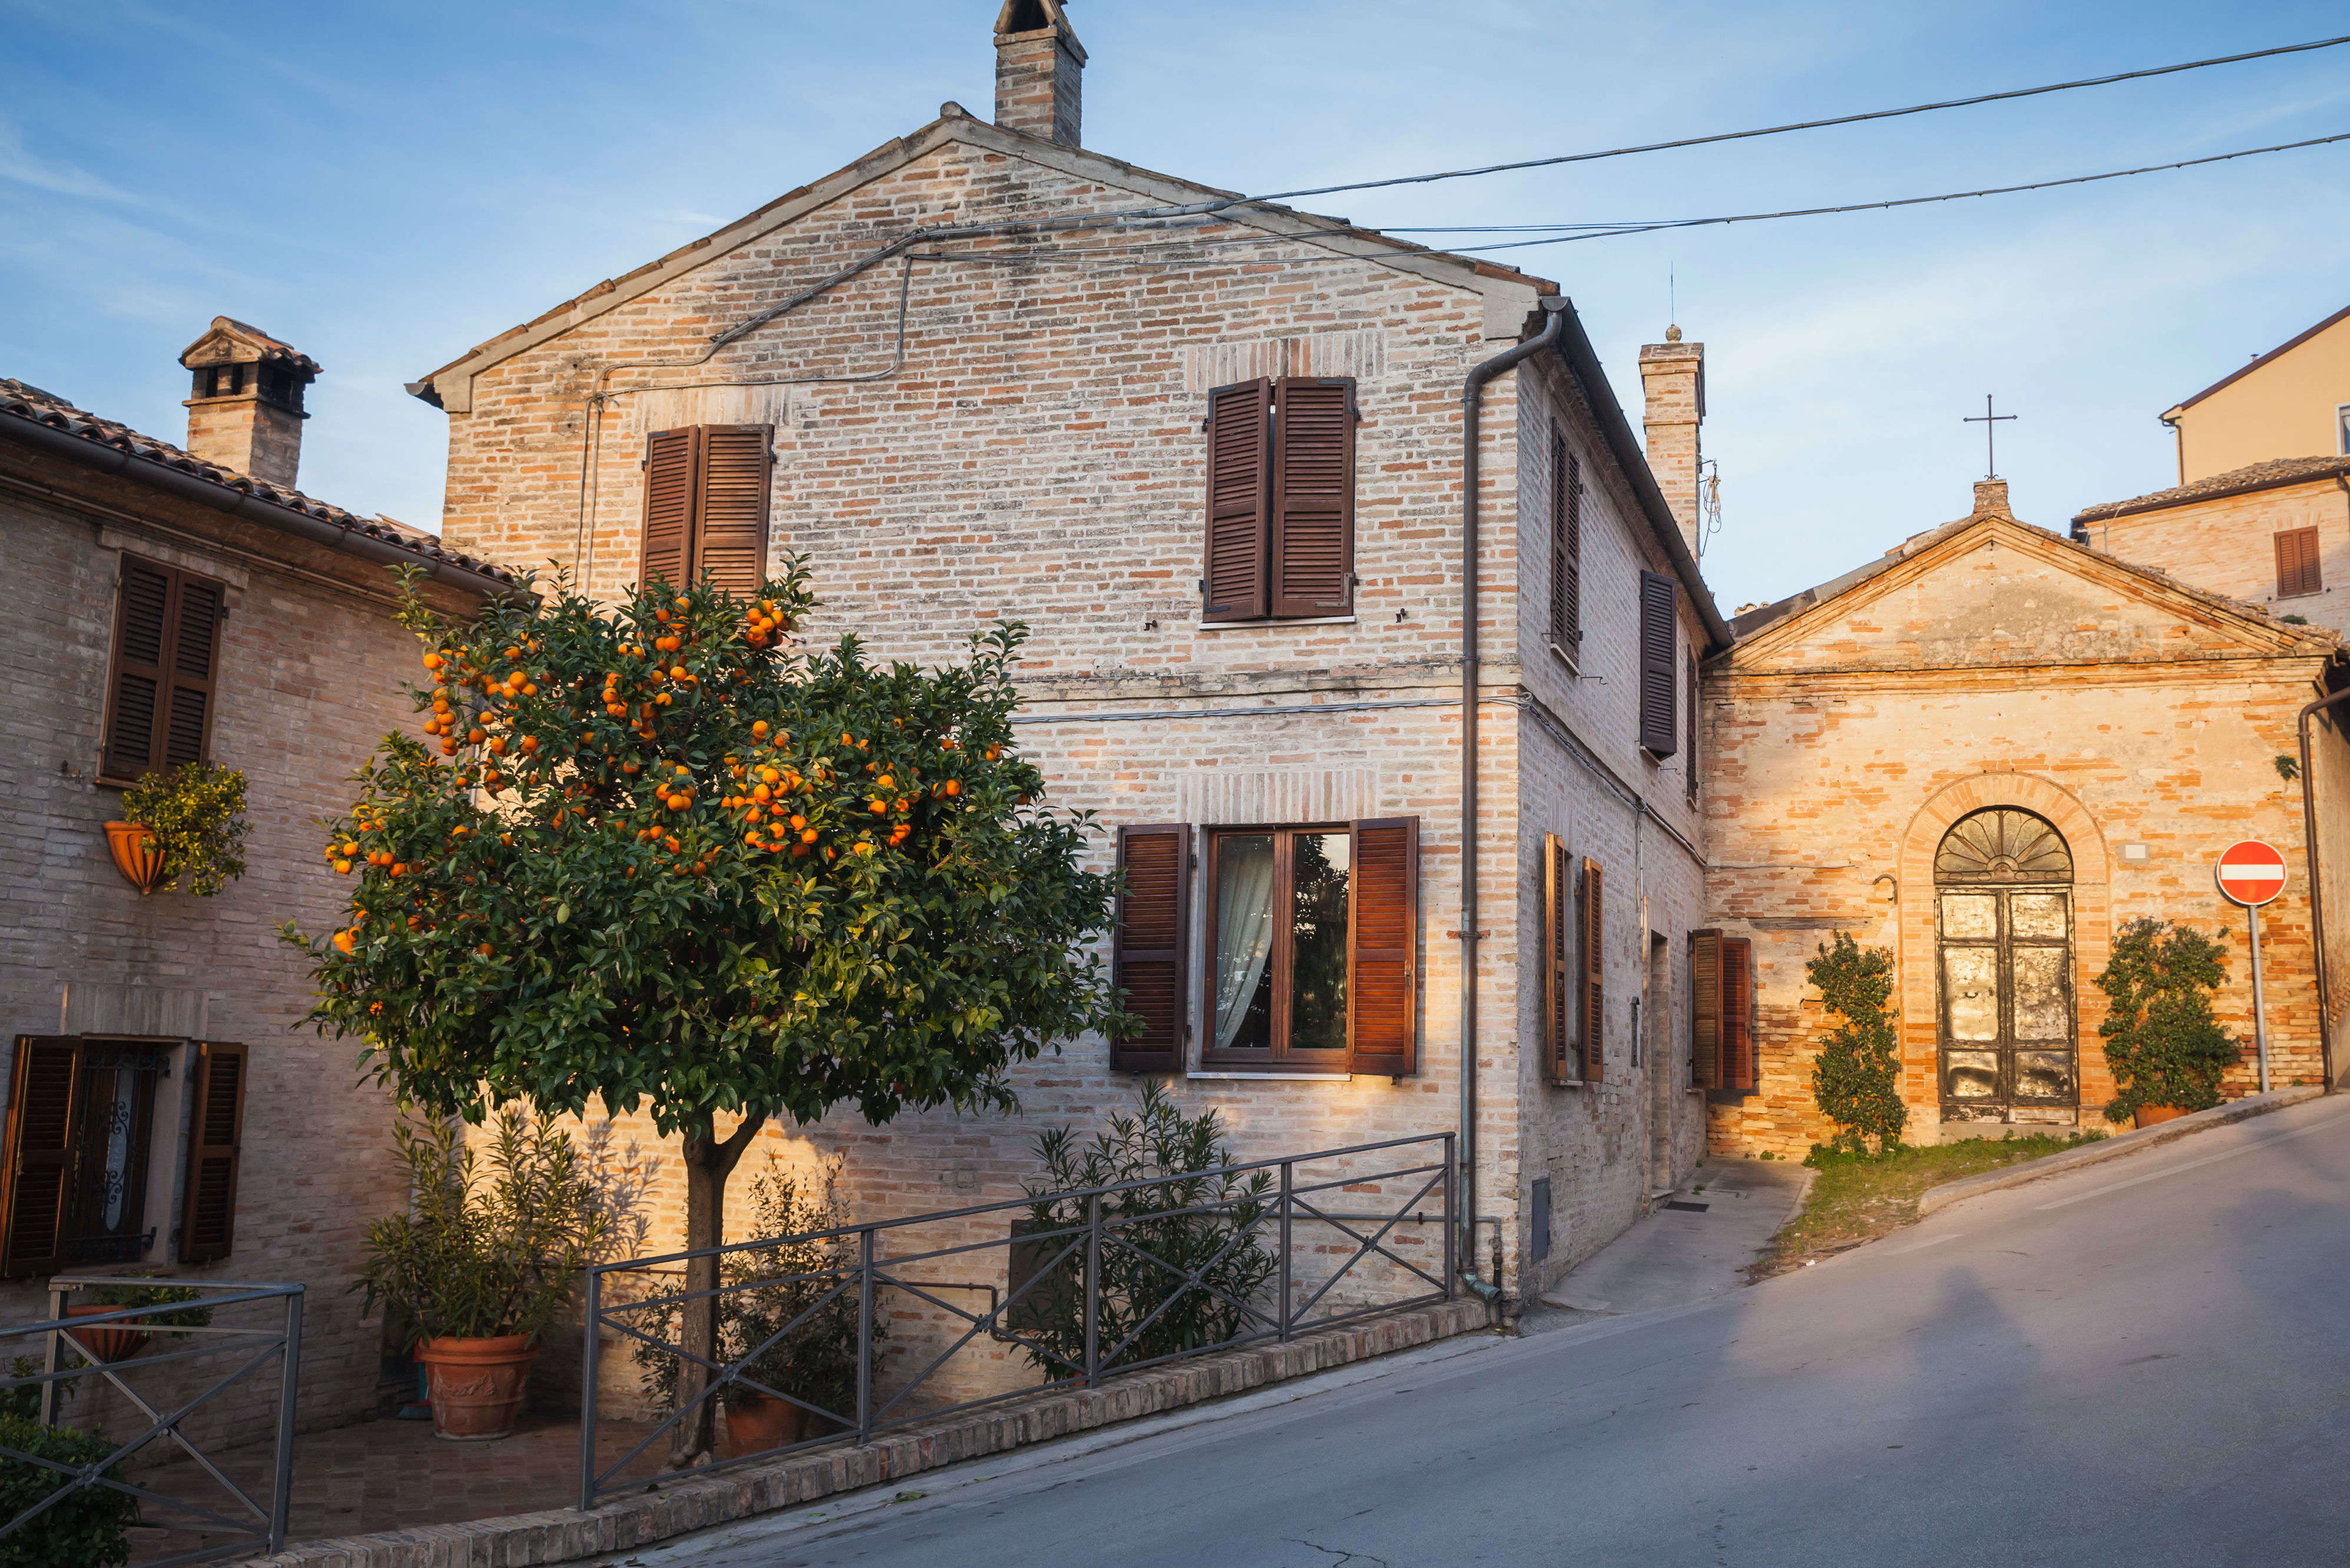 Mua một căn nhà một đô la ở vùng nông thôn nước Ý - thỏa thuận là gì?